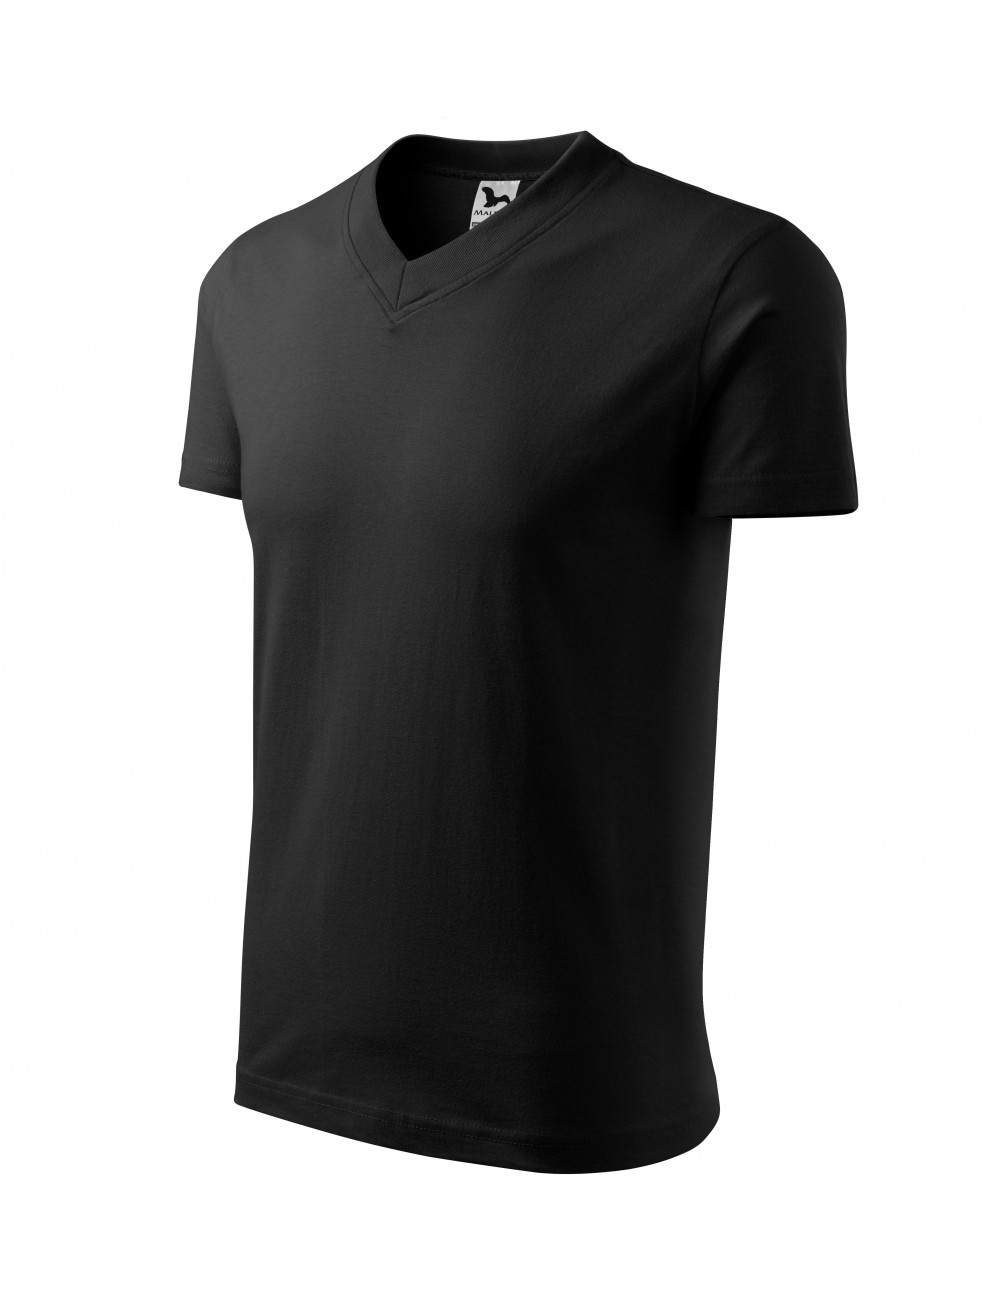 Unisex t-shirt v-neck 102 black Adler Malfini